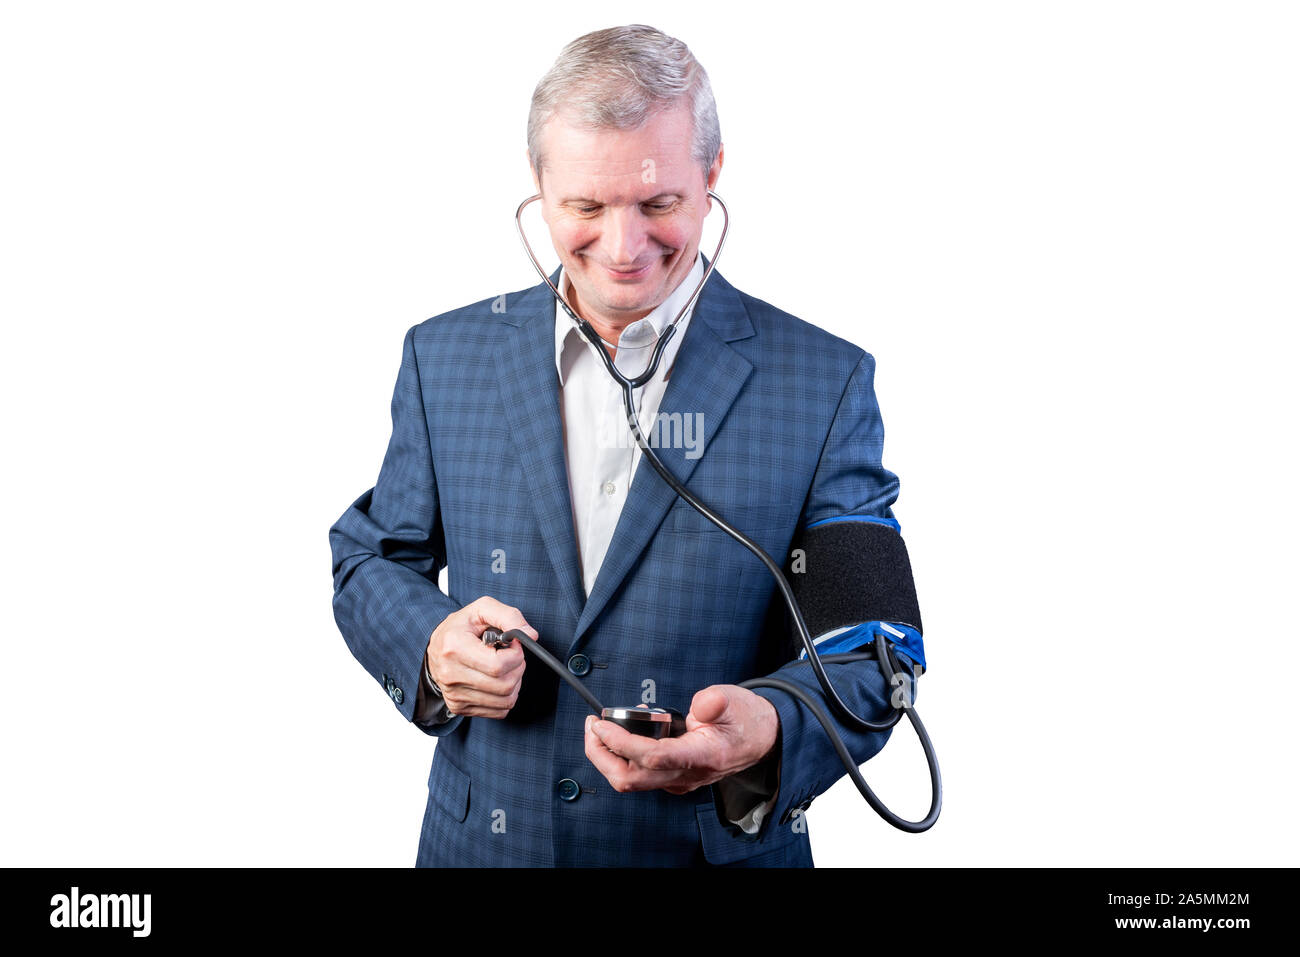 Un uomo anziano in una tuta misure di pressione, da lui stesso, con una mano tonometro. Isolato su uno sfondo bianco. Foto Stock